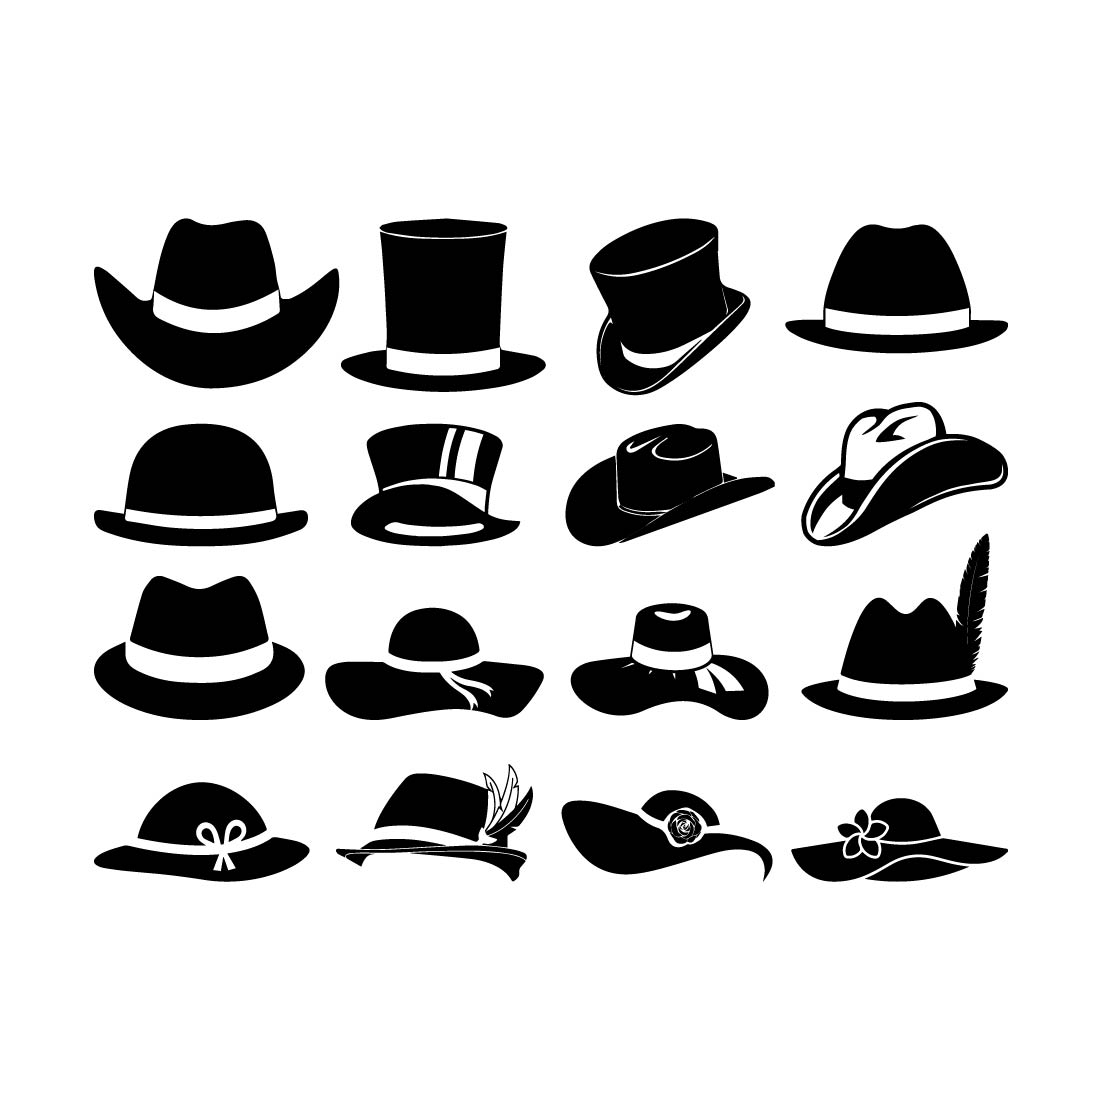 Hat Svg Bundle, Hat Clipart, Beanie Svg, Hat Png, Hat Vector, Baseball Cap Svg, Top Hat Svg, Cowboy Hat Svg, Sun Hat Svg, Cloche Hat Svg preview image.